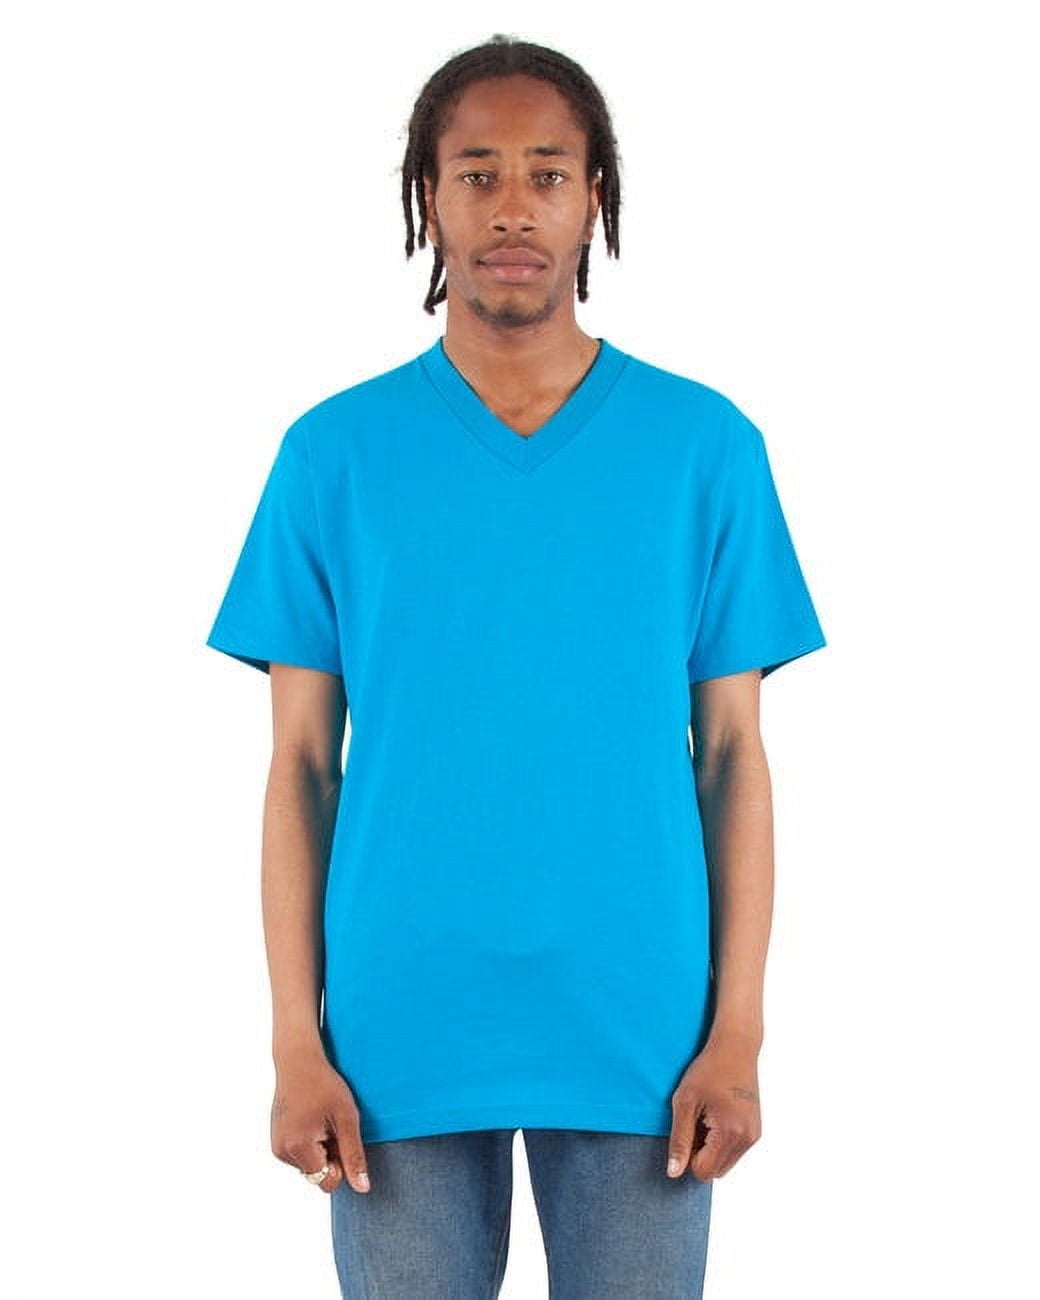 T-shirt Cinch Turquoise 96' pour hommes - MTT1690476